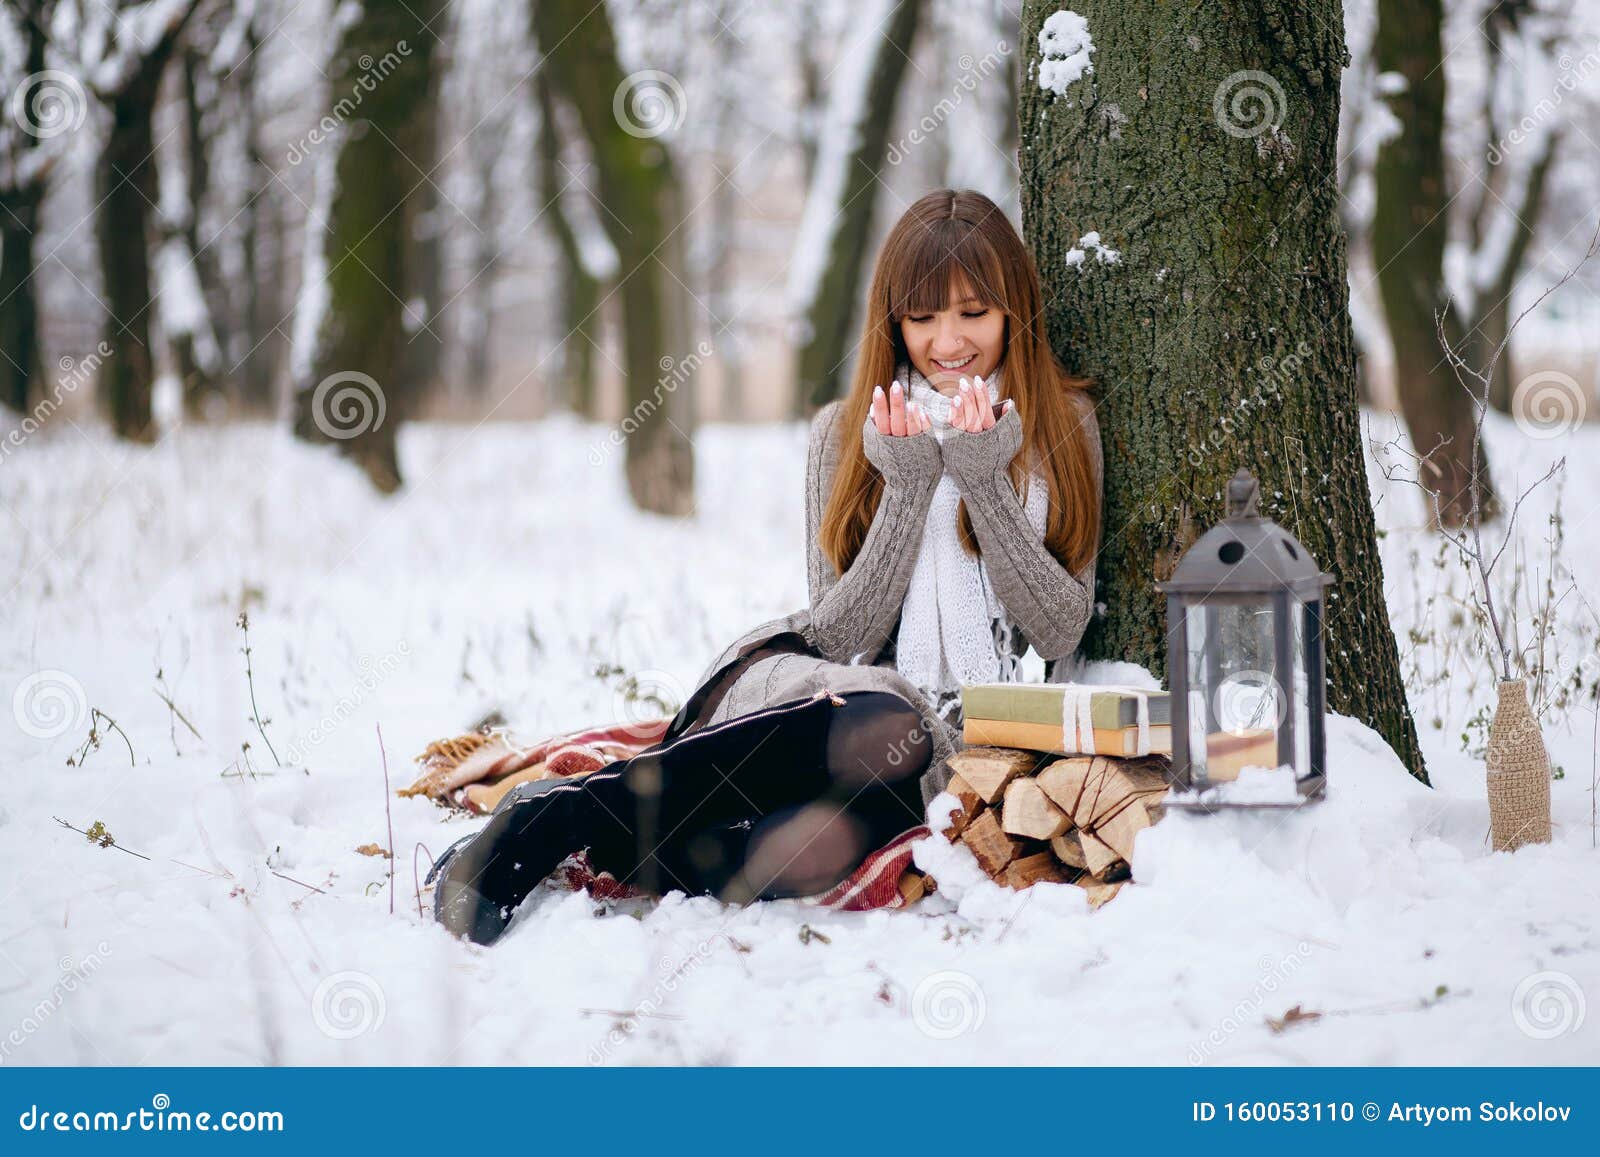 一个裹着毯子的雪林女孩的冬日画像裸头 头发上的雪花库存照片 图片包括有环境 户外 建筑师